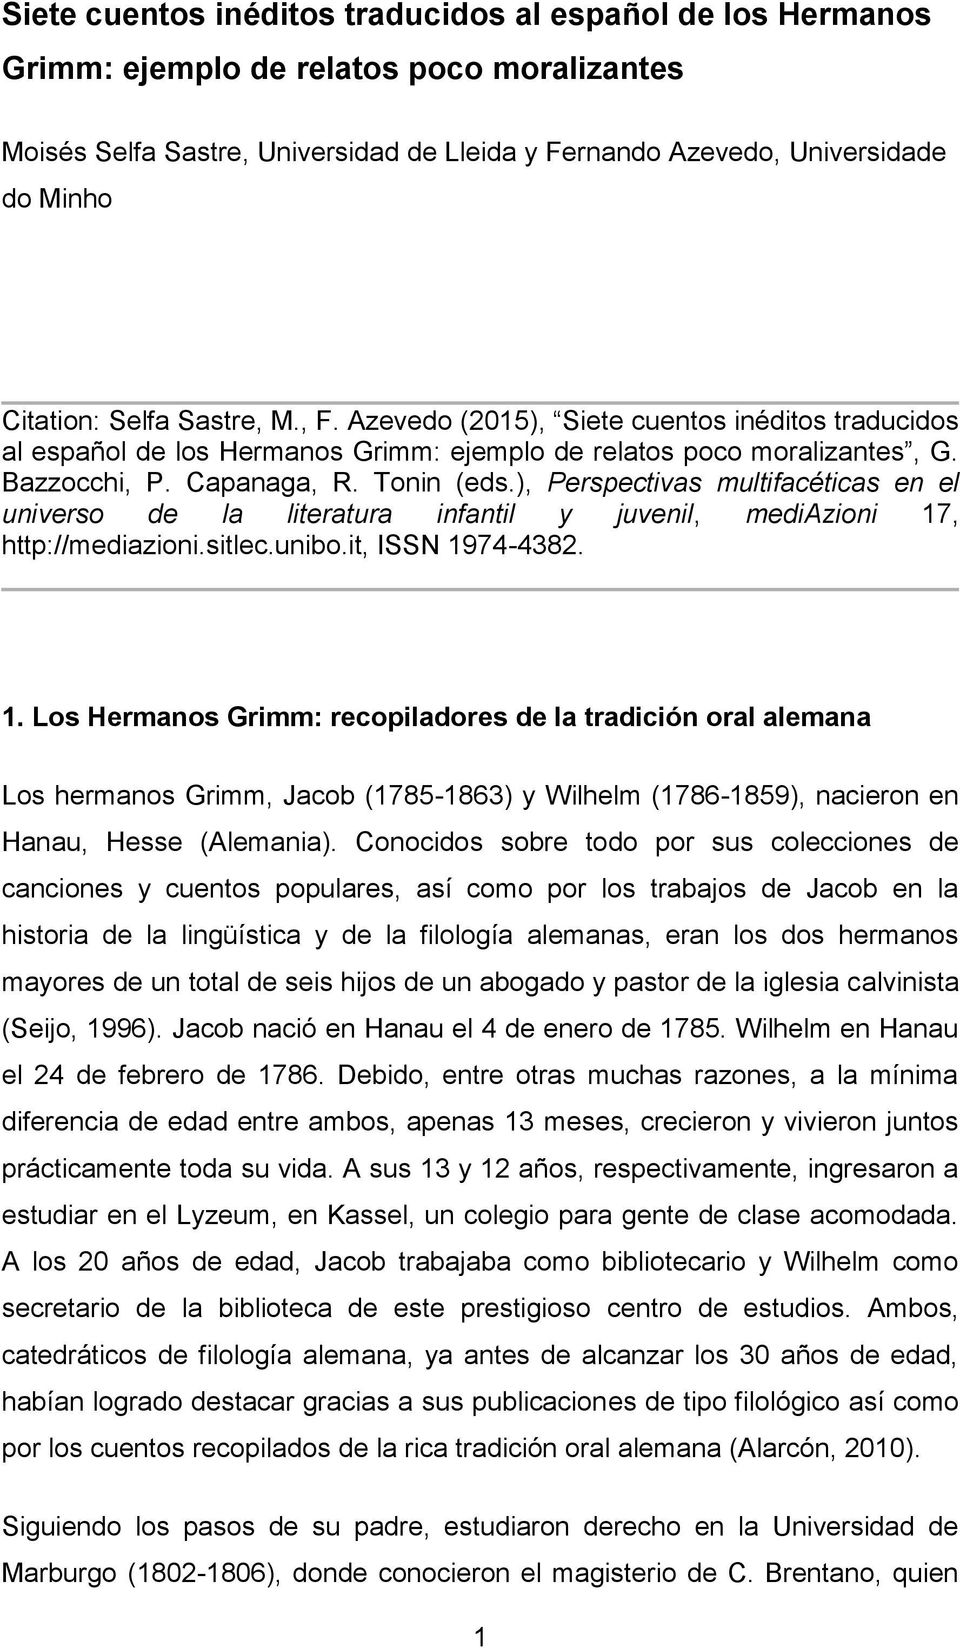 Siete cuentos inéditos traducidos al español de los Hermanos Grimm: ejemplo  de relatos poco moralizantes - PDF Descargar libre